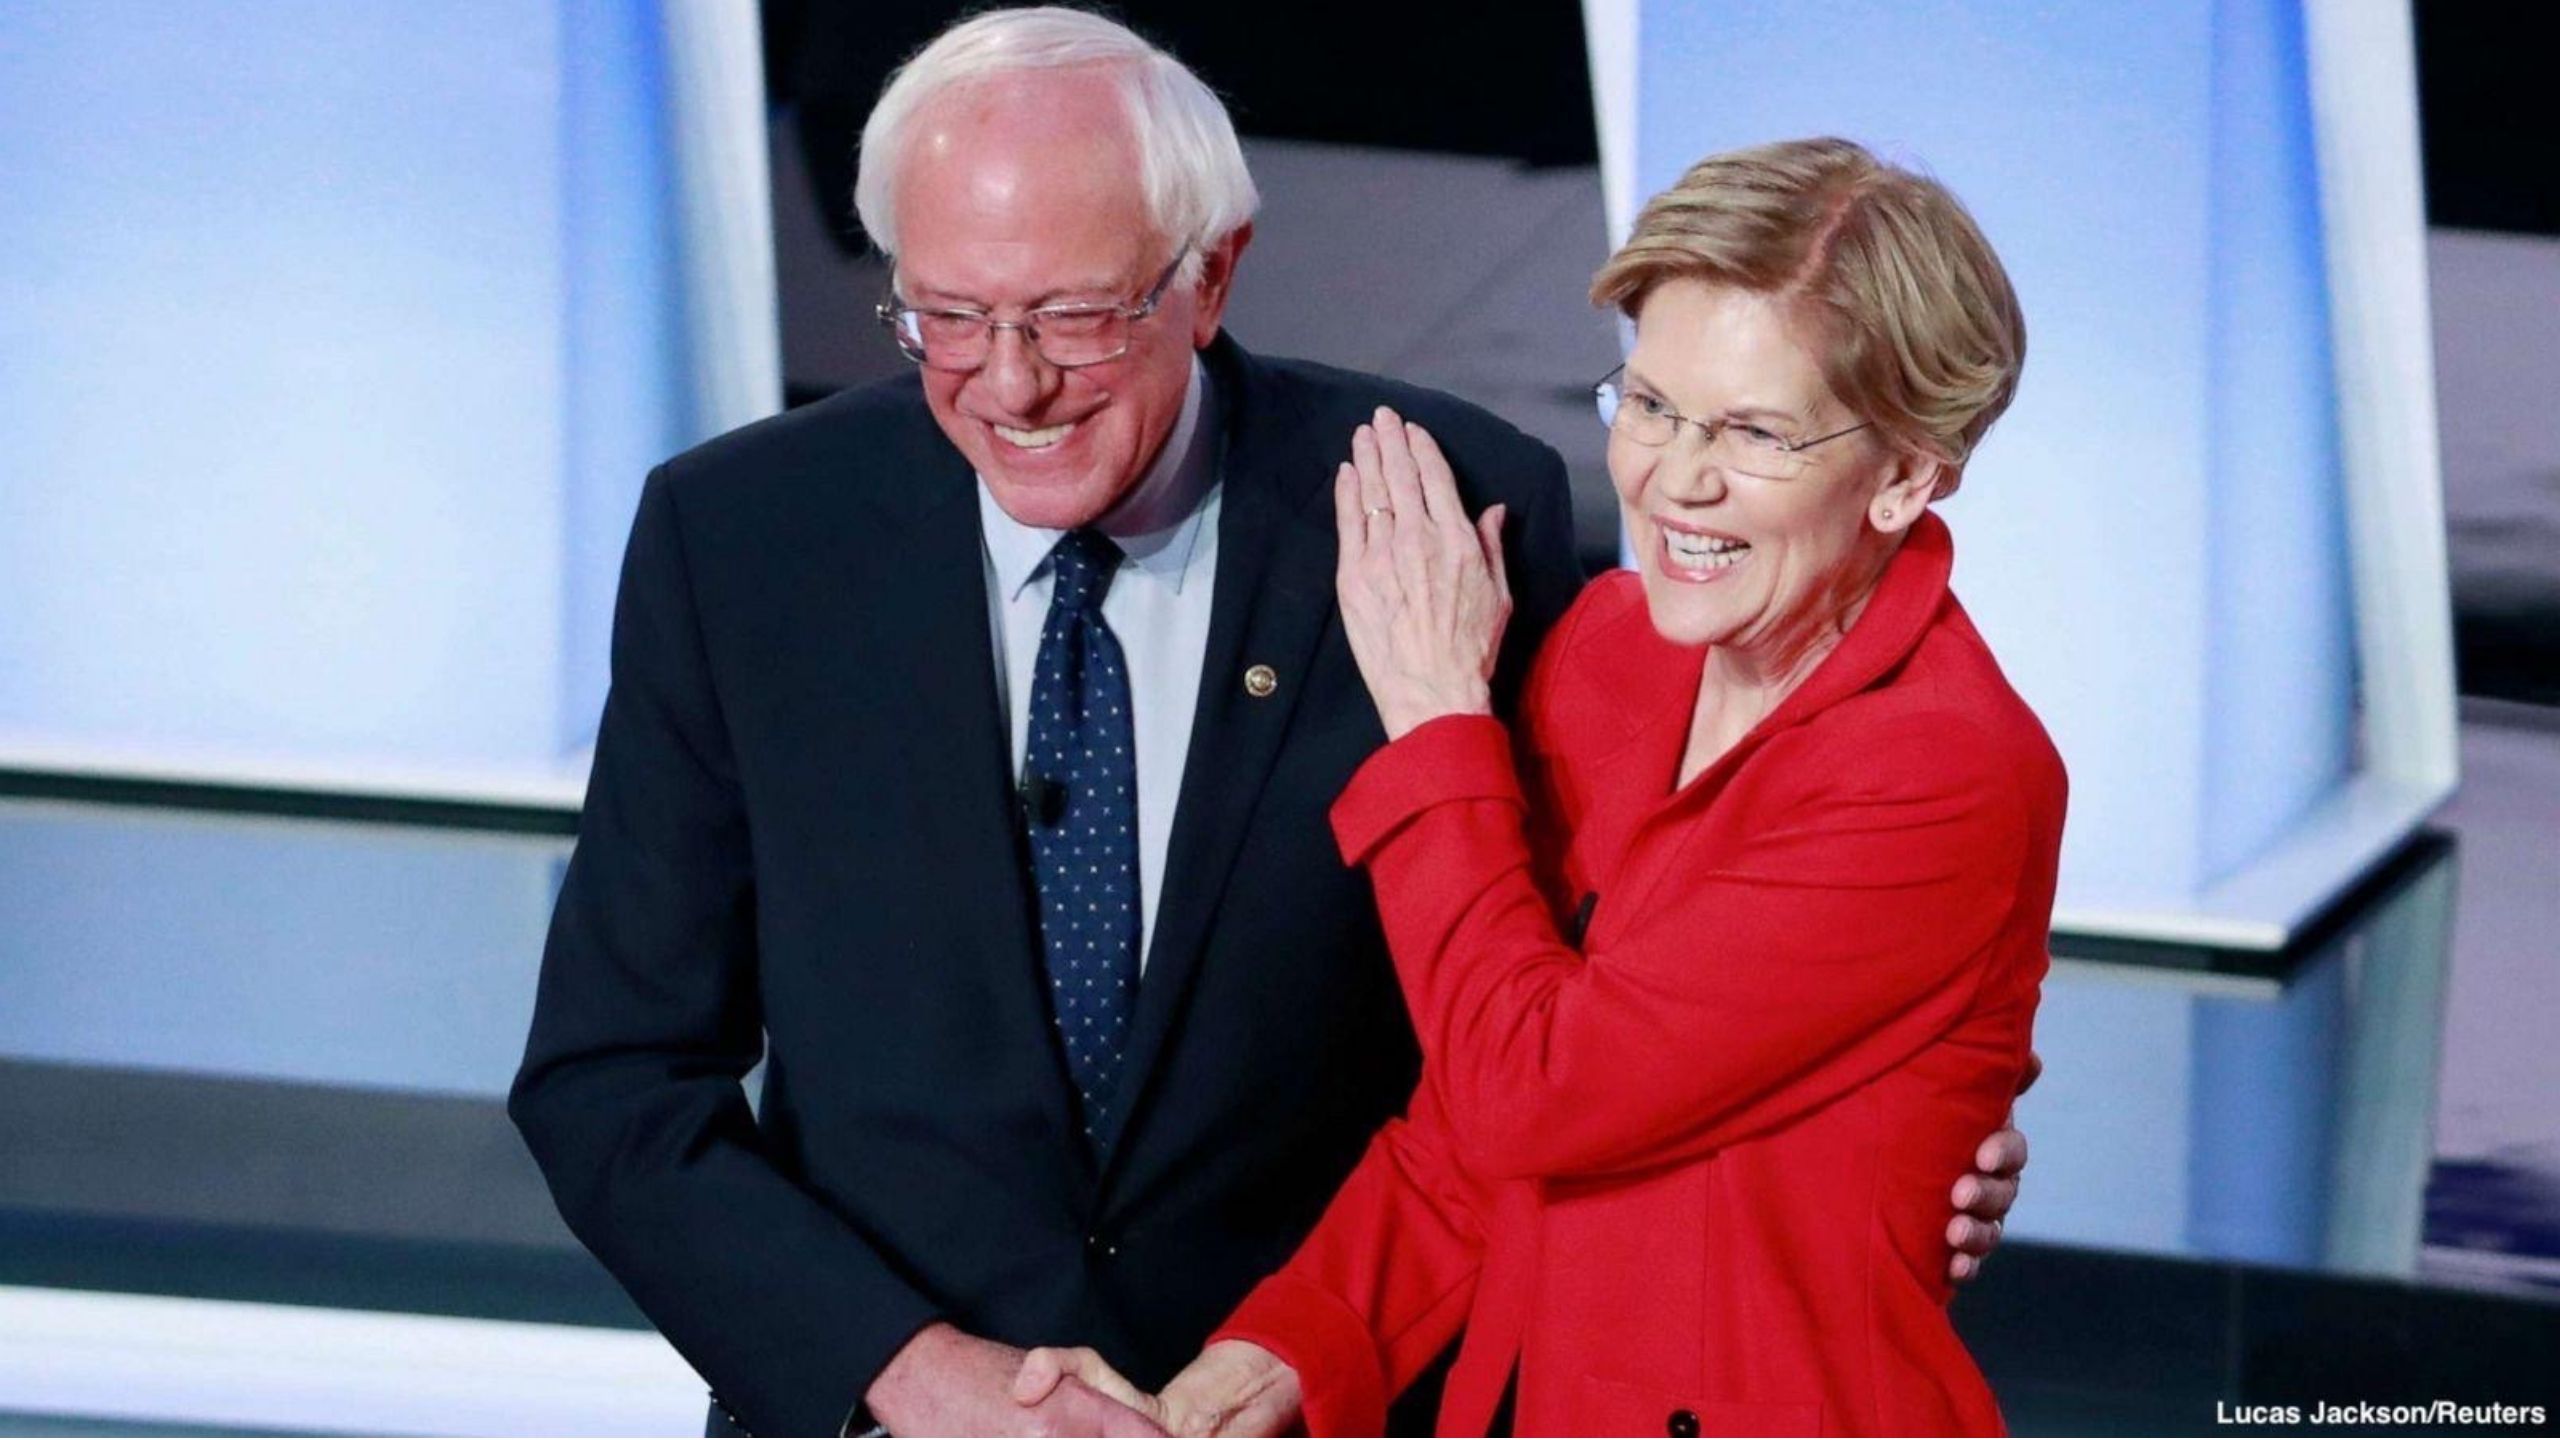 7 Post Debate Polls Show One Clear Winner: Bernie Sanders